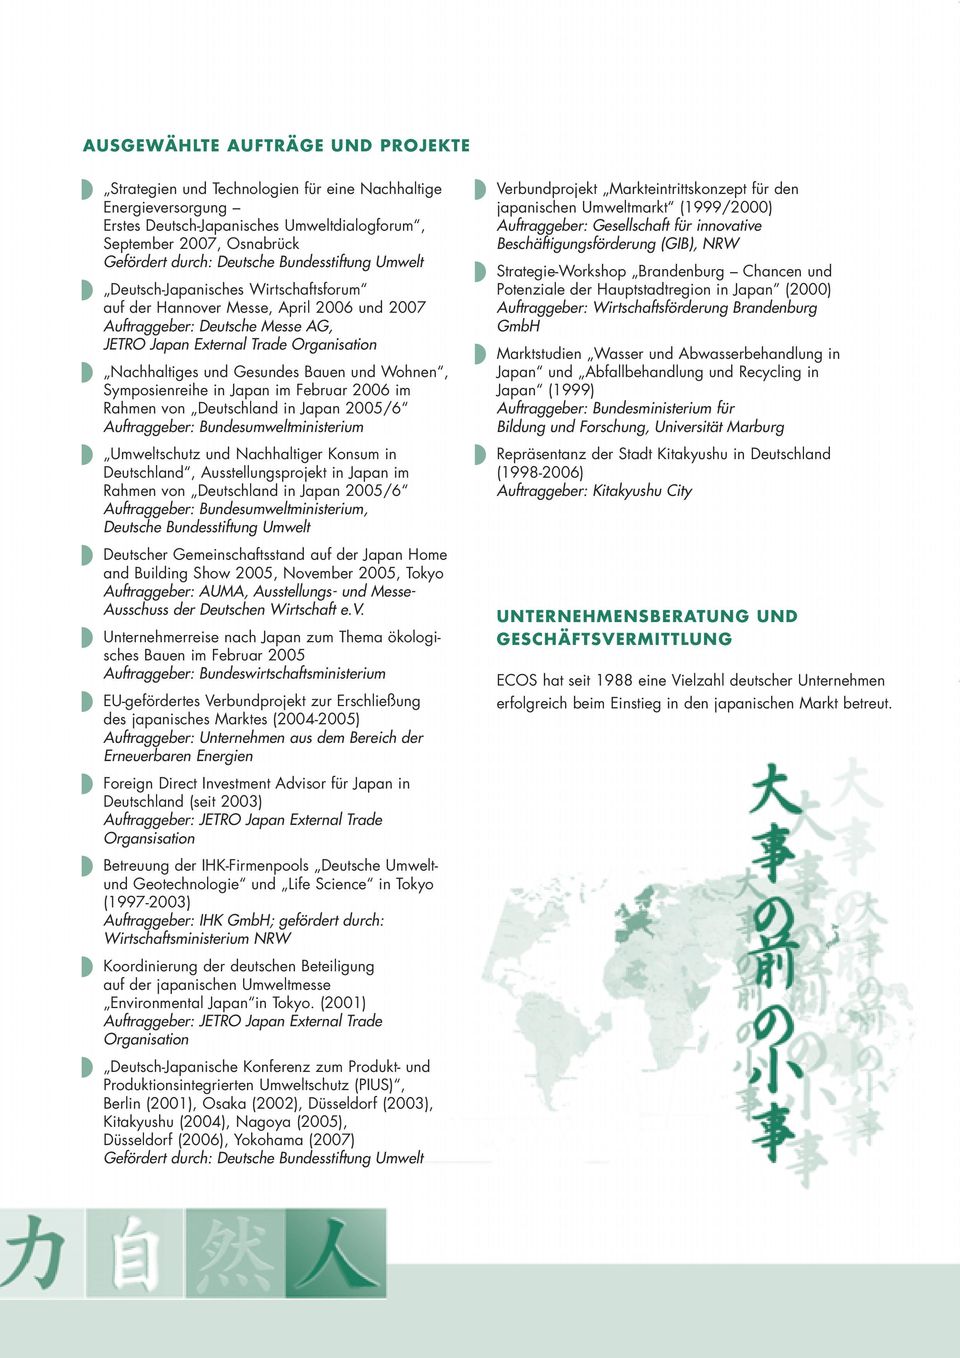 Gesundes Bauen und Wohnen, Symposienreihe in Japan im Februar 2006 im Rahmen von Deutschland in Japan 2005/6 Auftraggeber: Bundesumweltministerium Umweltschutz und Nachhaltiger Konsum in Deutschland,